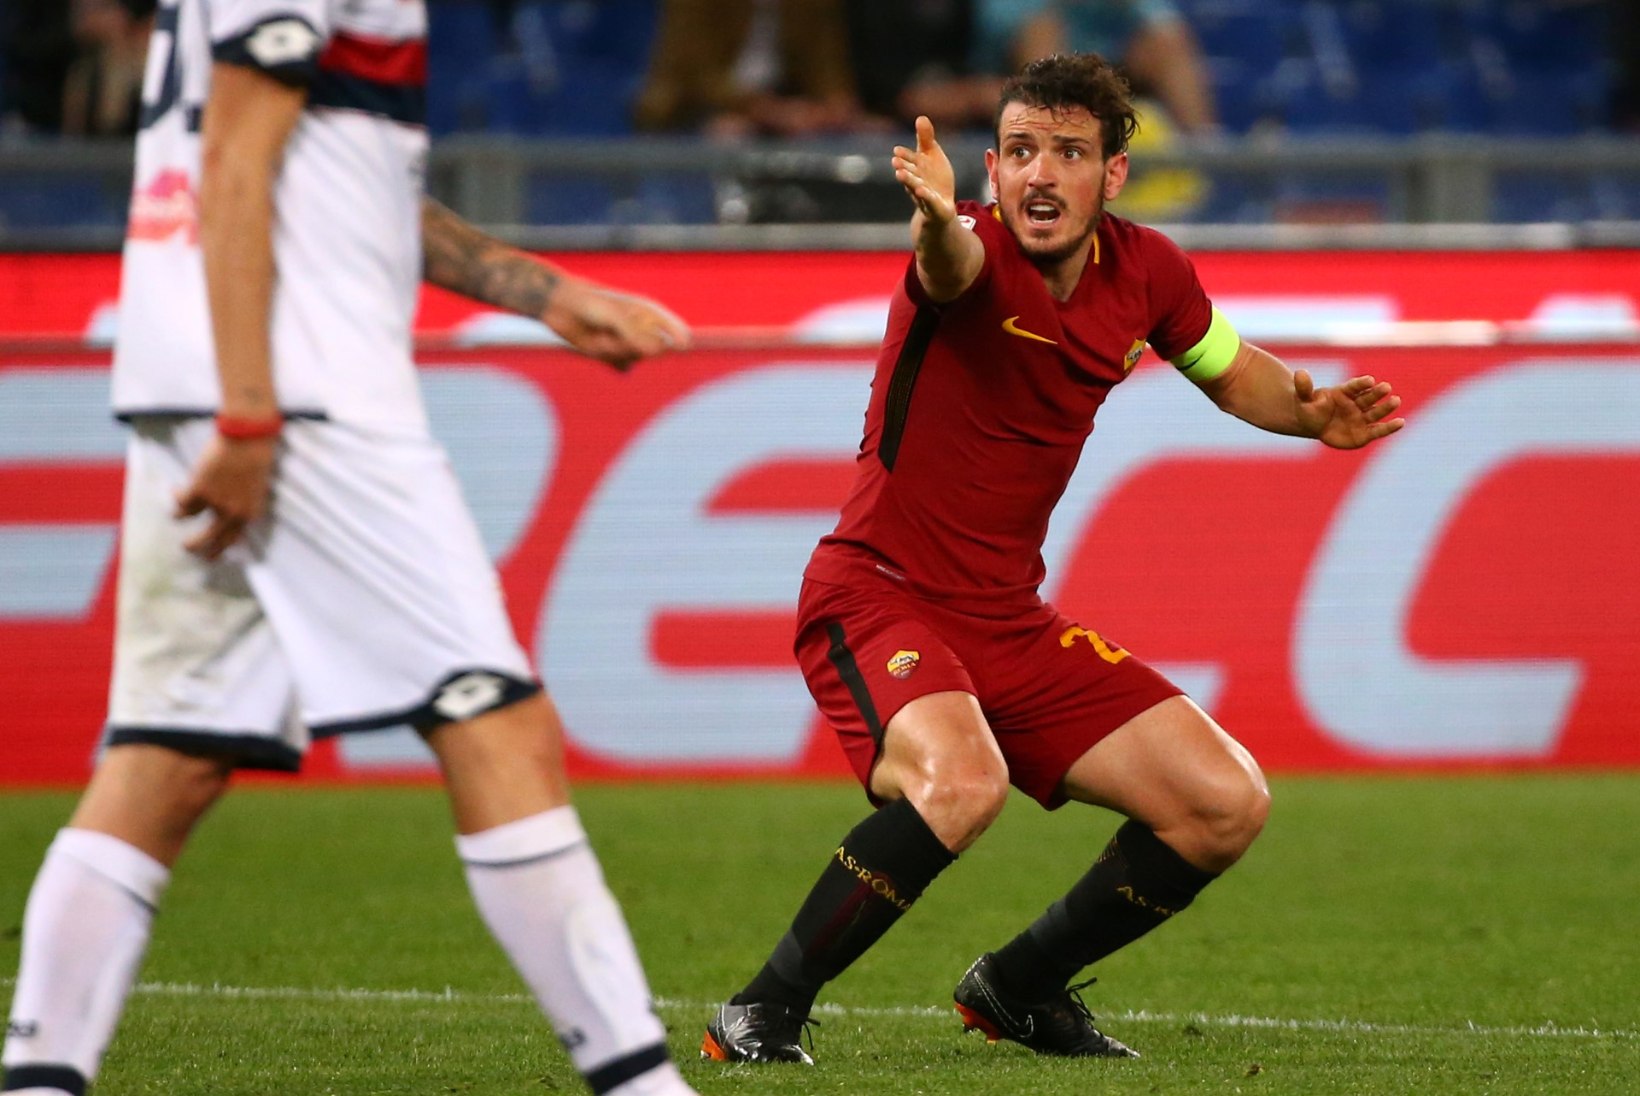 Barcelonalt šnitti võtnud Roma üllatab Liverpoolis jalgpallimaailma